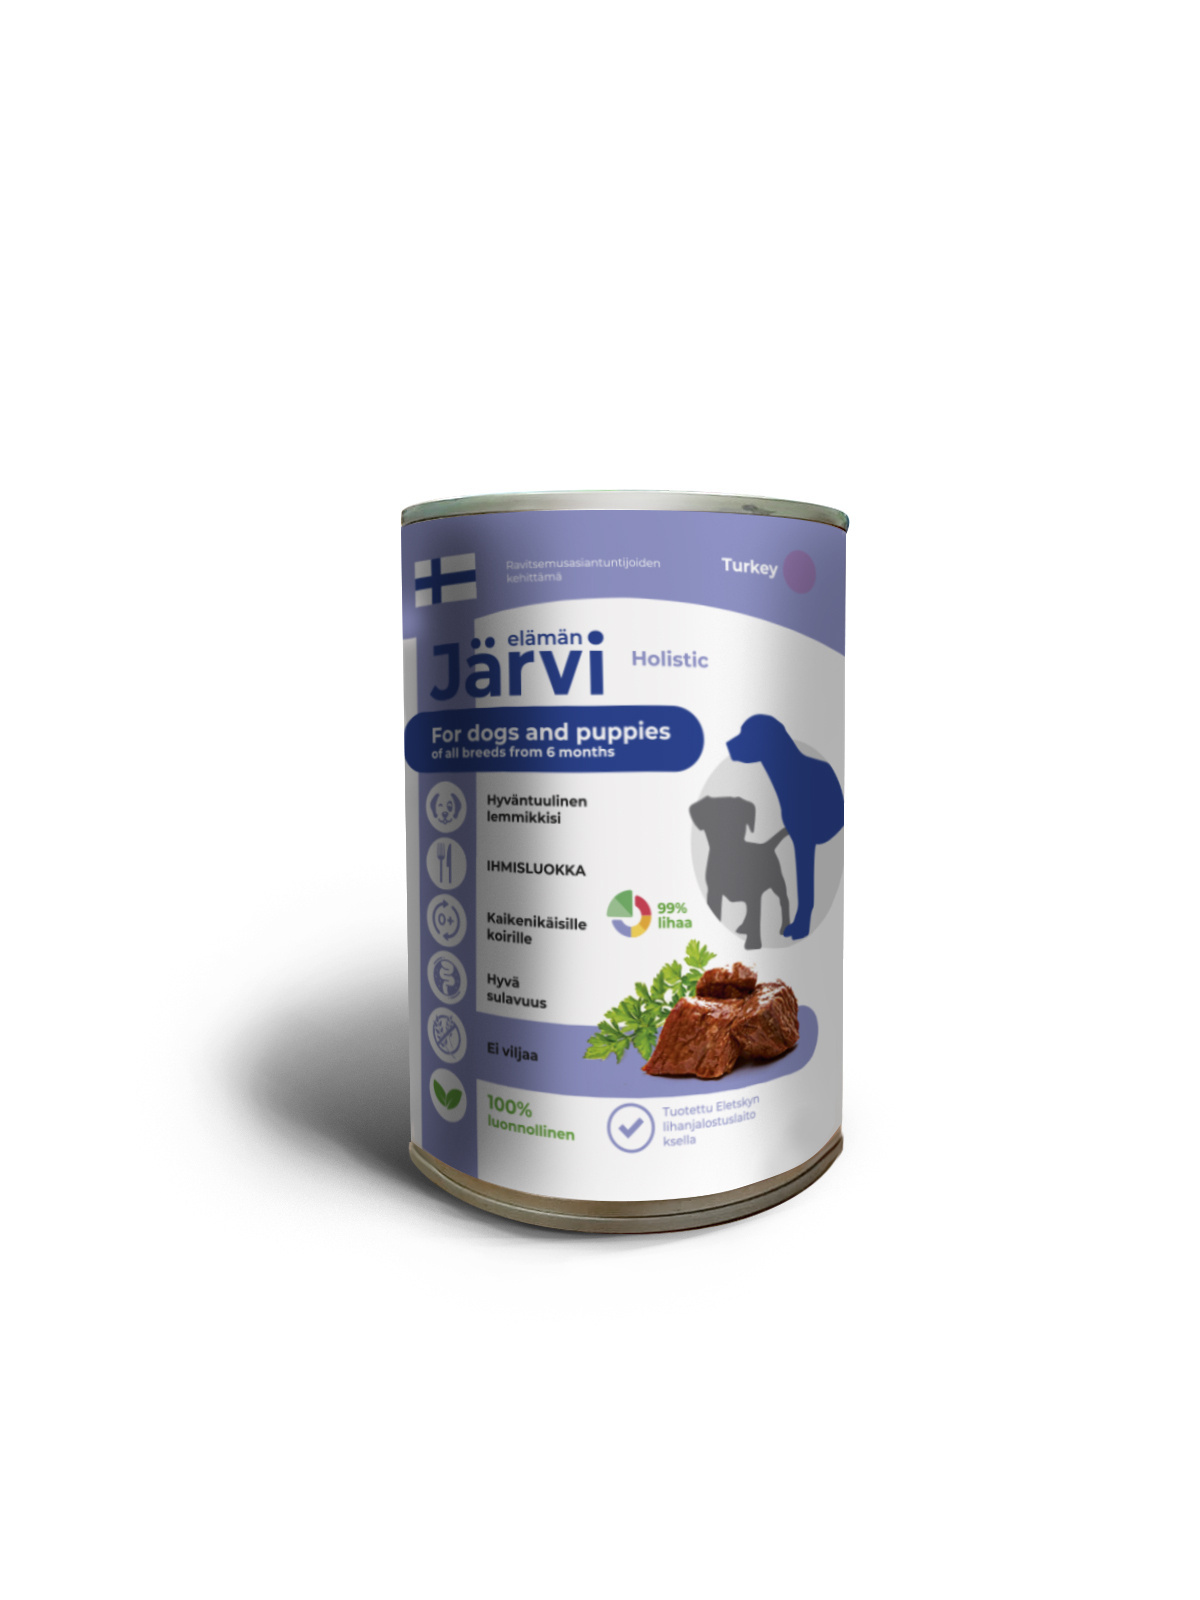 Jarvi консервы для щенков и собак всех пород с ягненком (400 г)